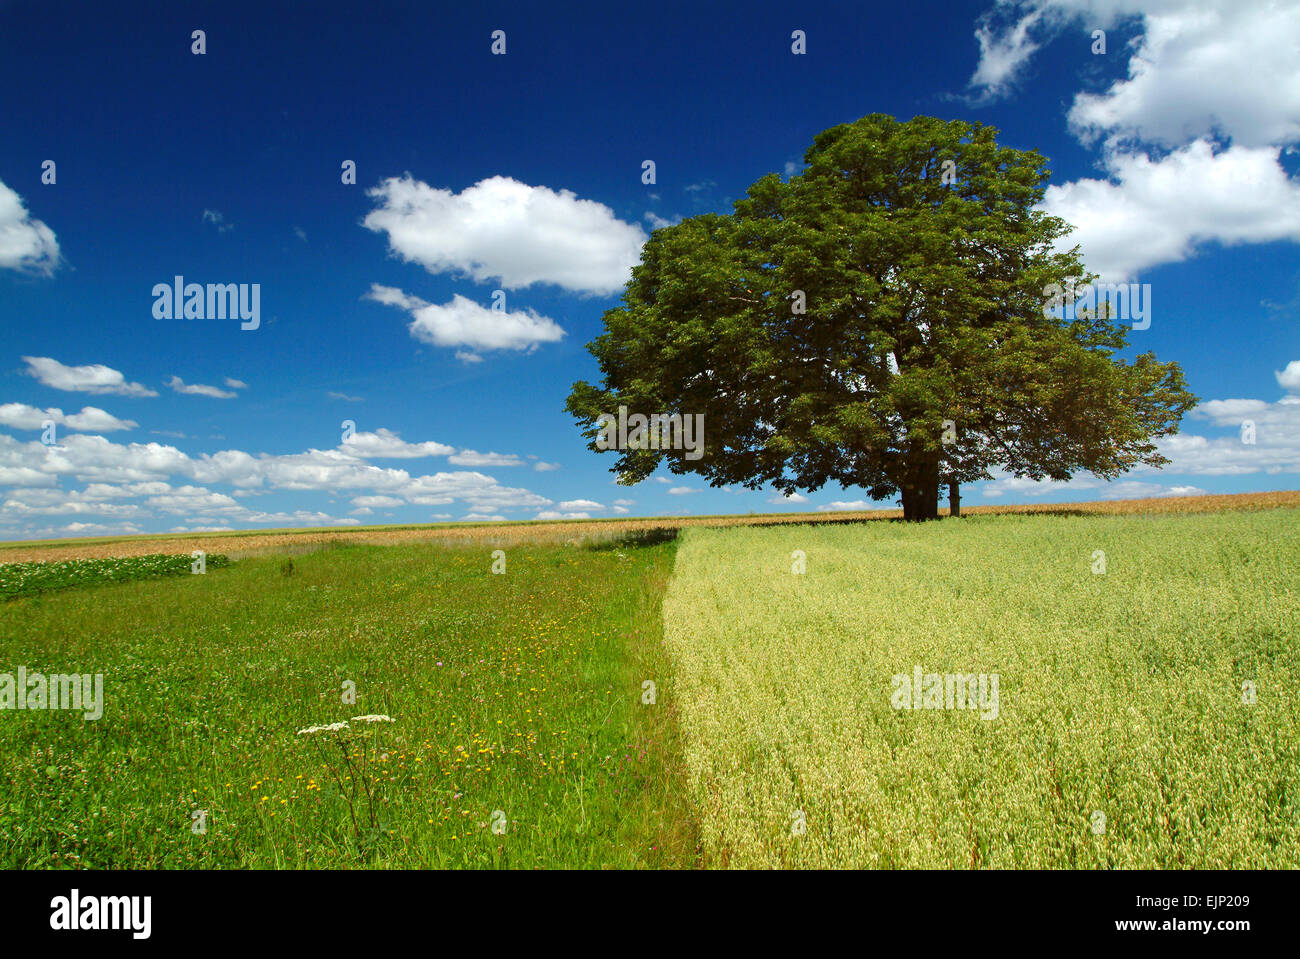 Oak tree alone in a field, austria, europe Stock Photo